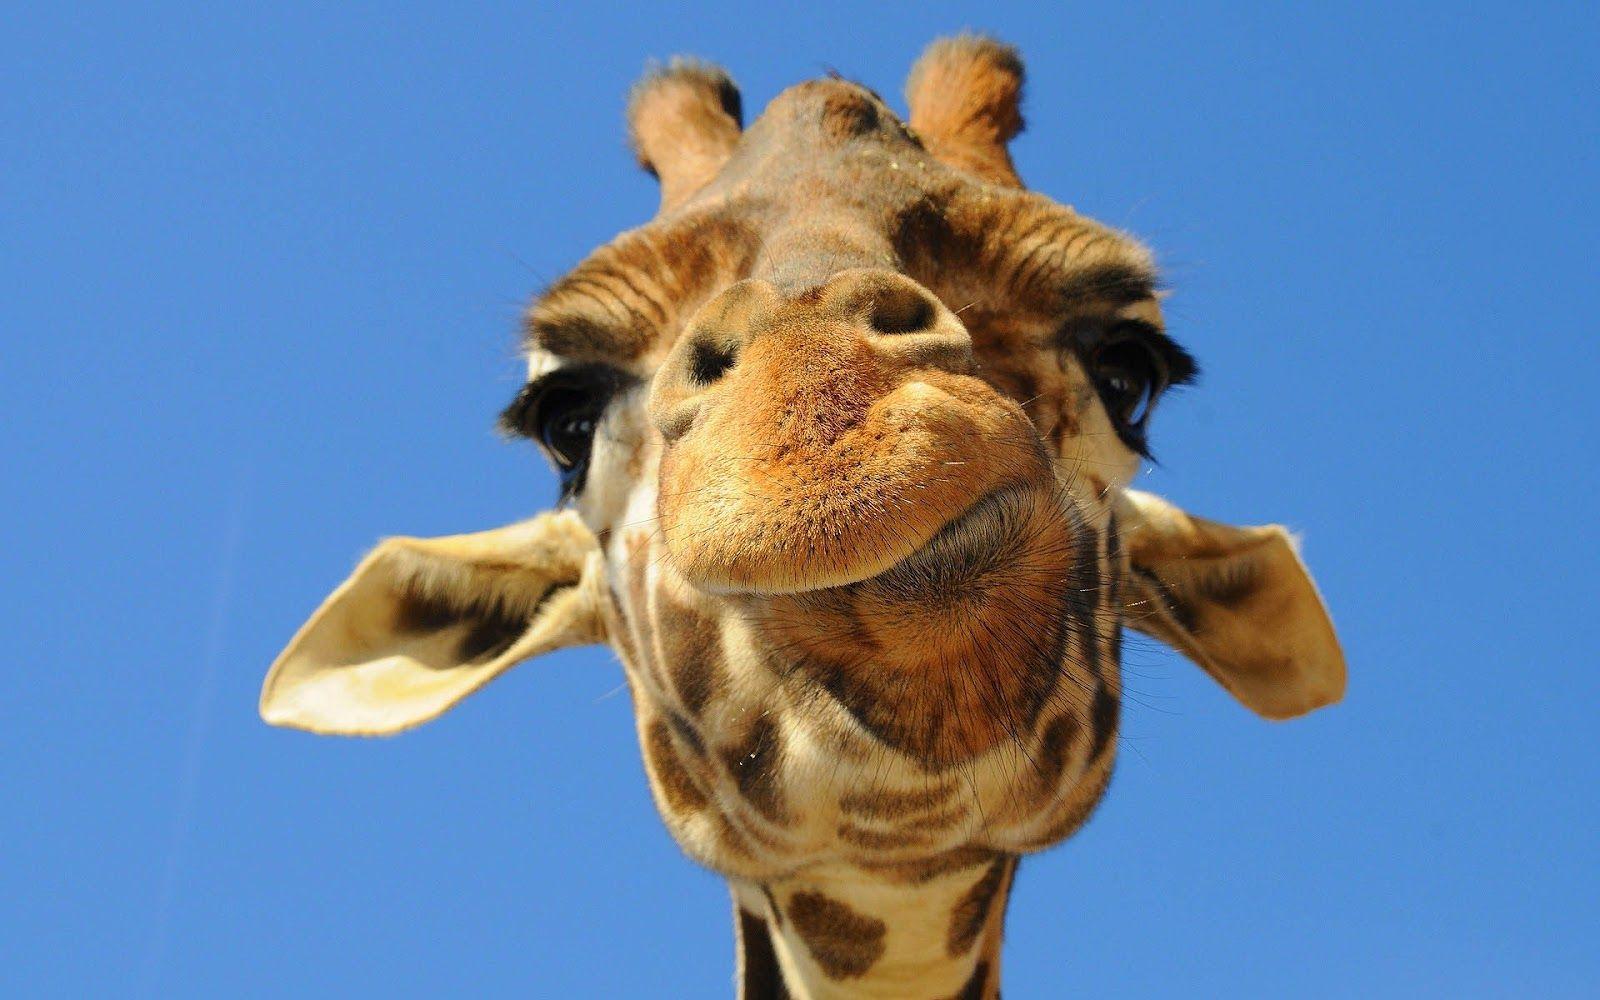 Giraffe Images Hd